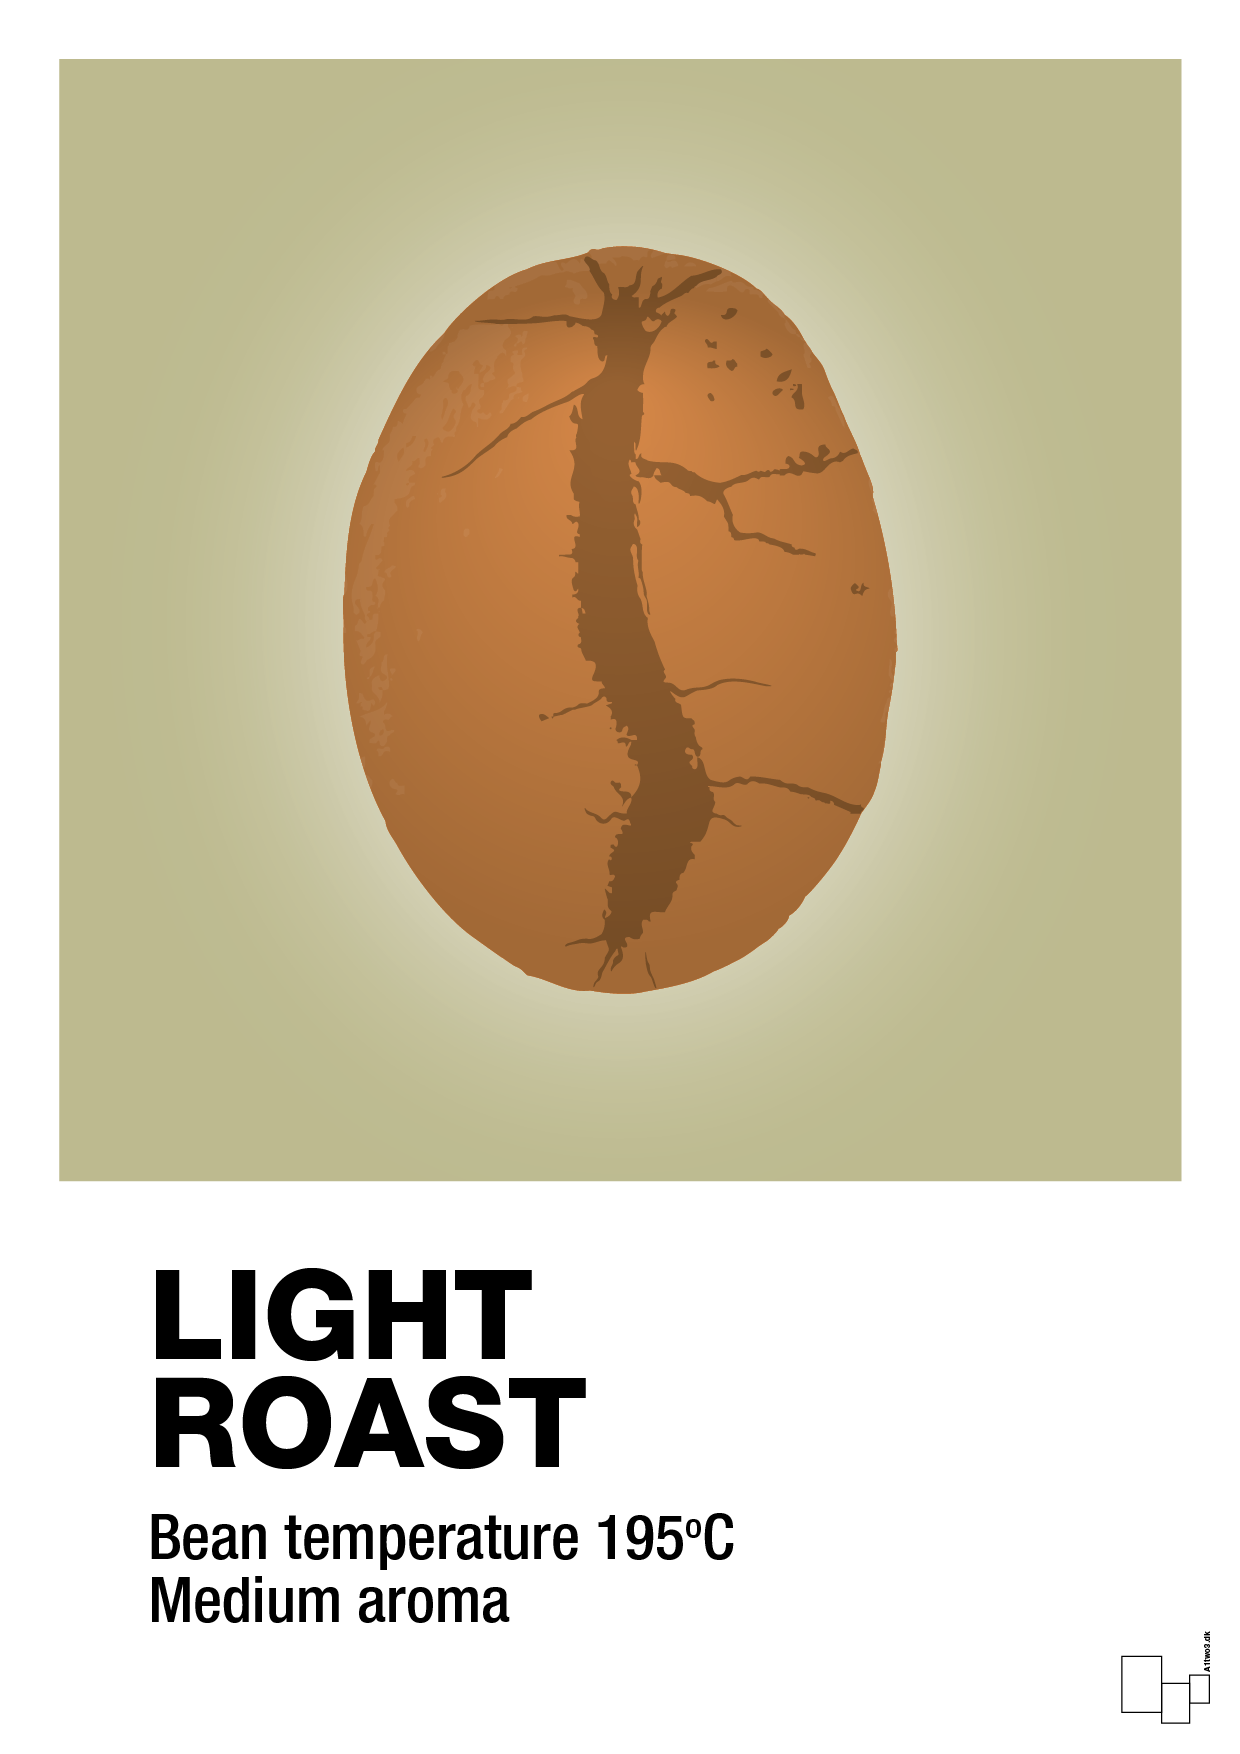 light roast - Plakat med Mad & Drikke i Back to Nature